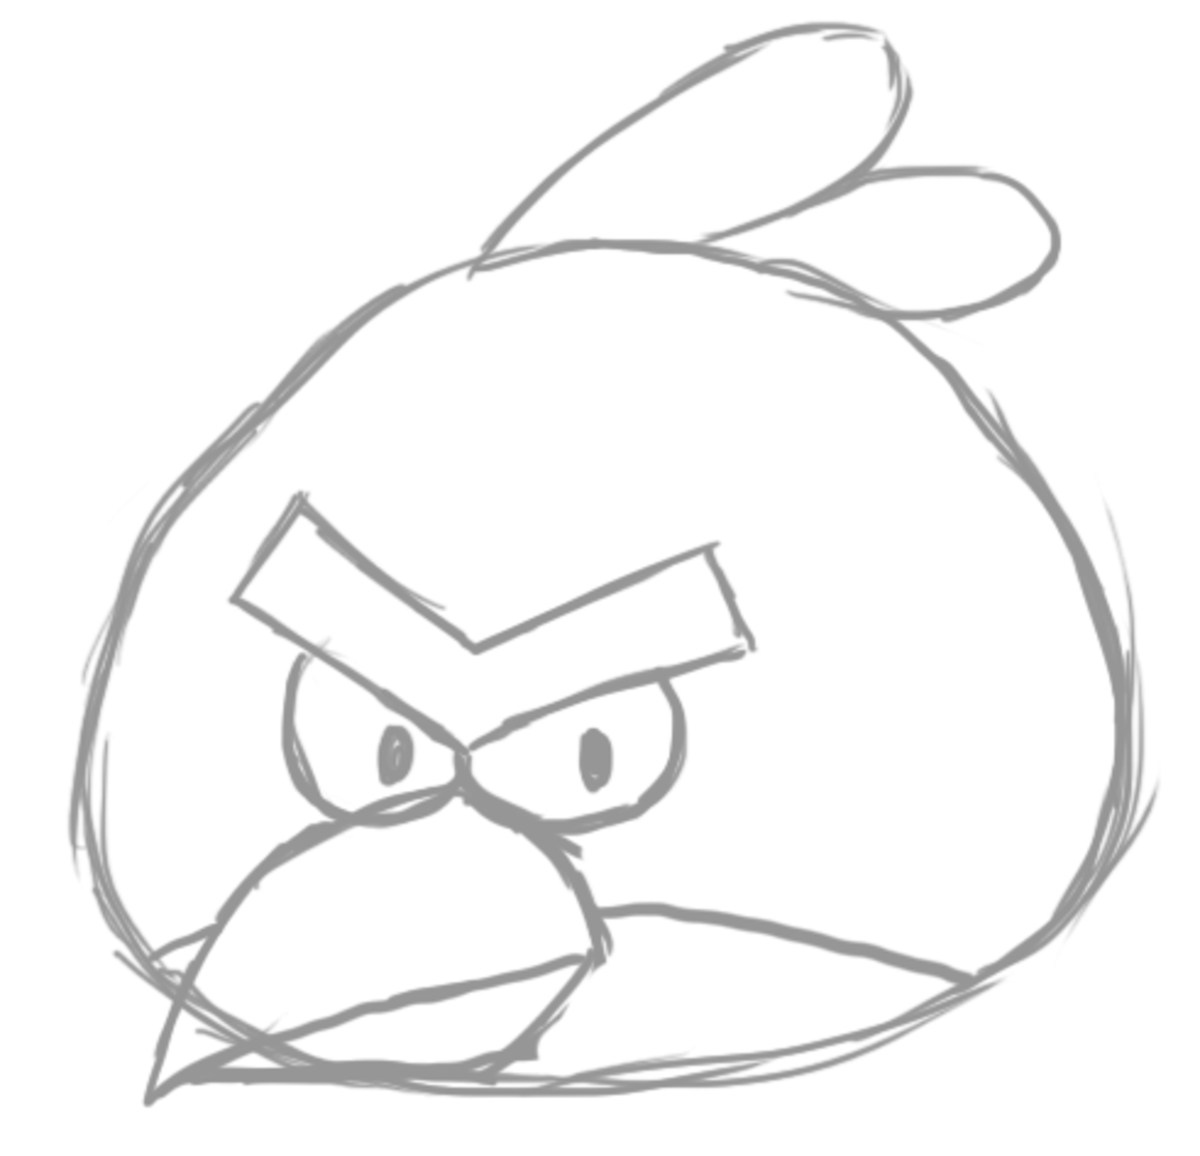 How to Draw Angry Birds (Blue)-saigonsouth.com.vn